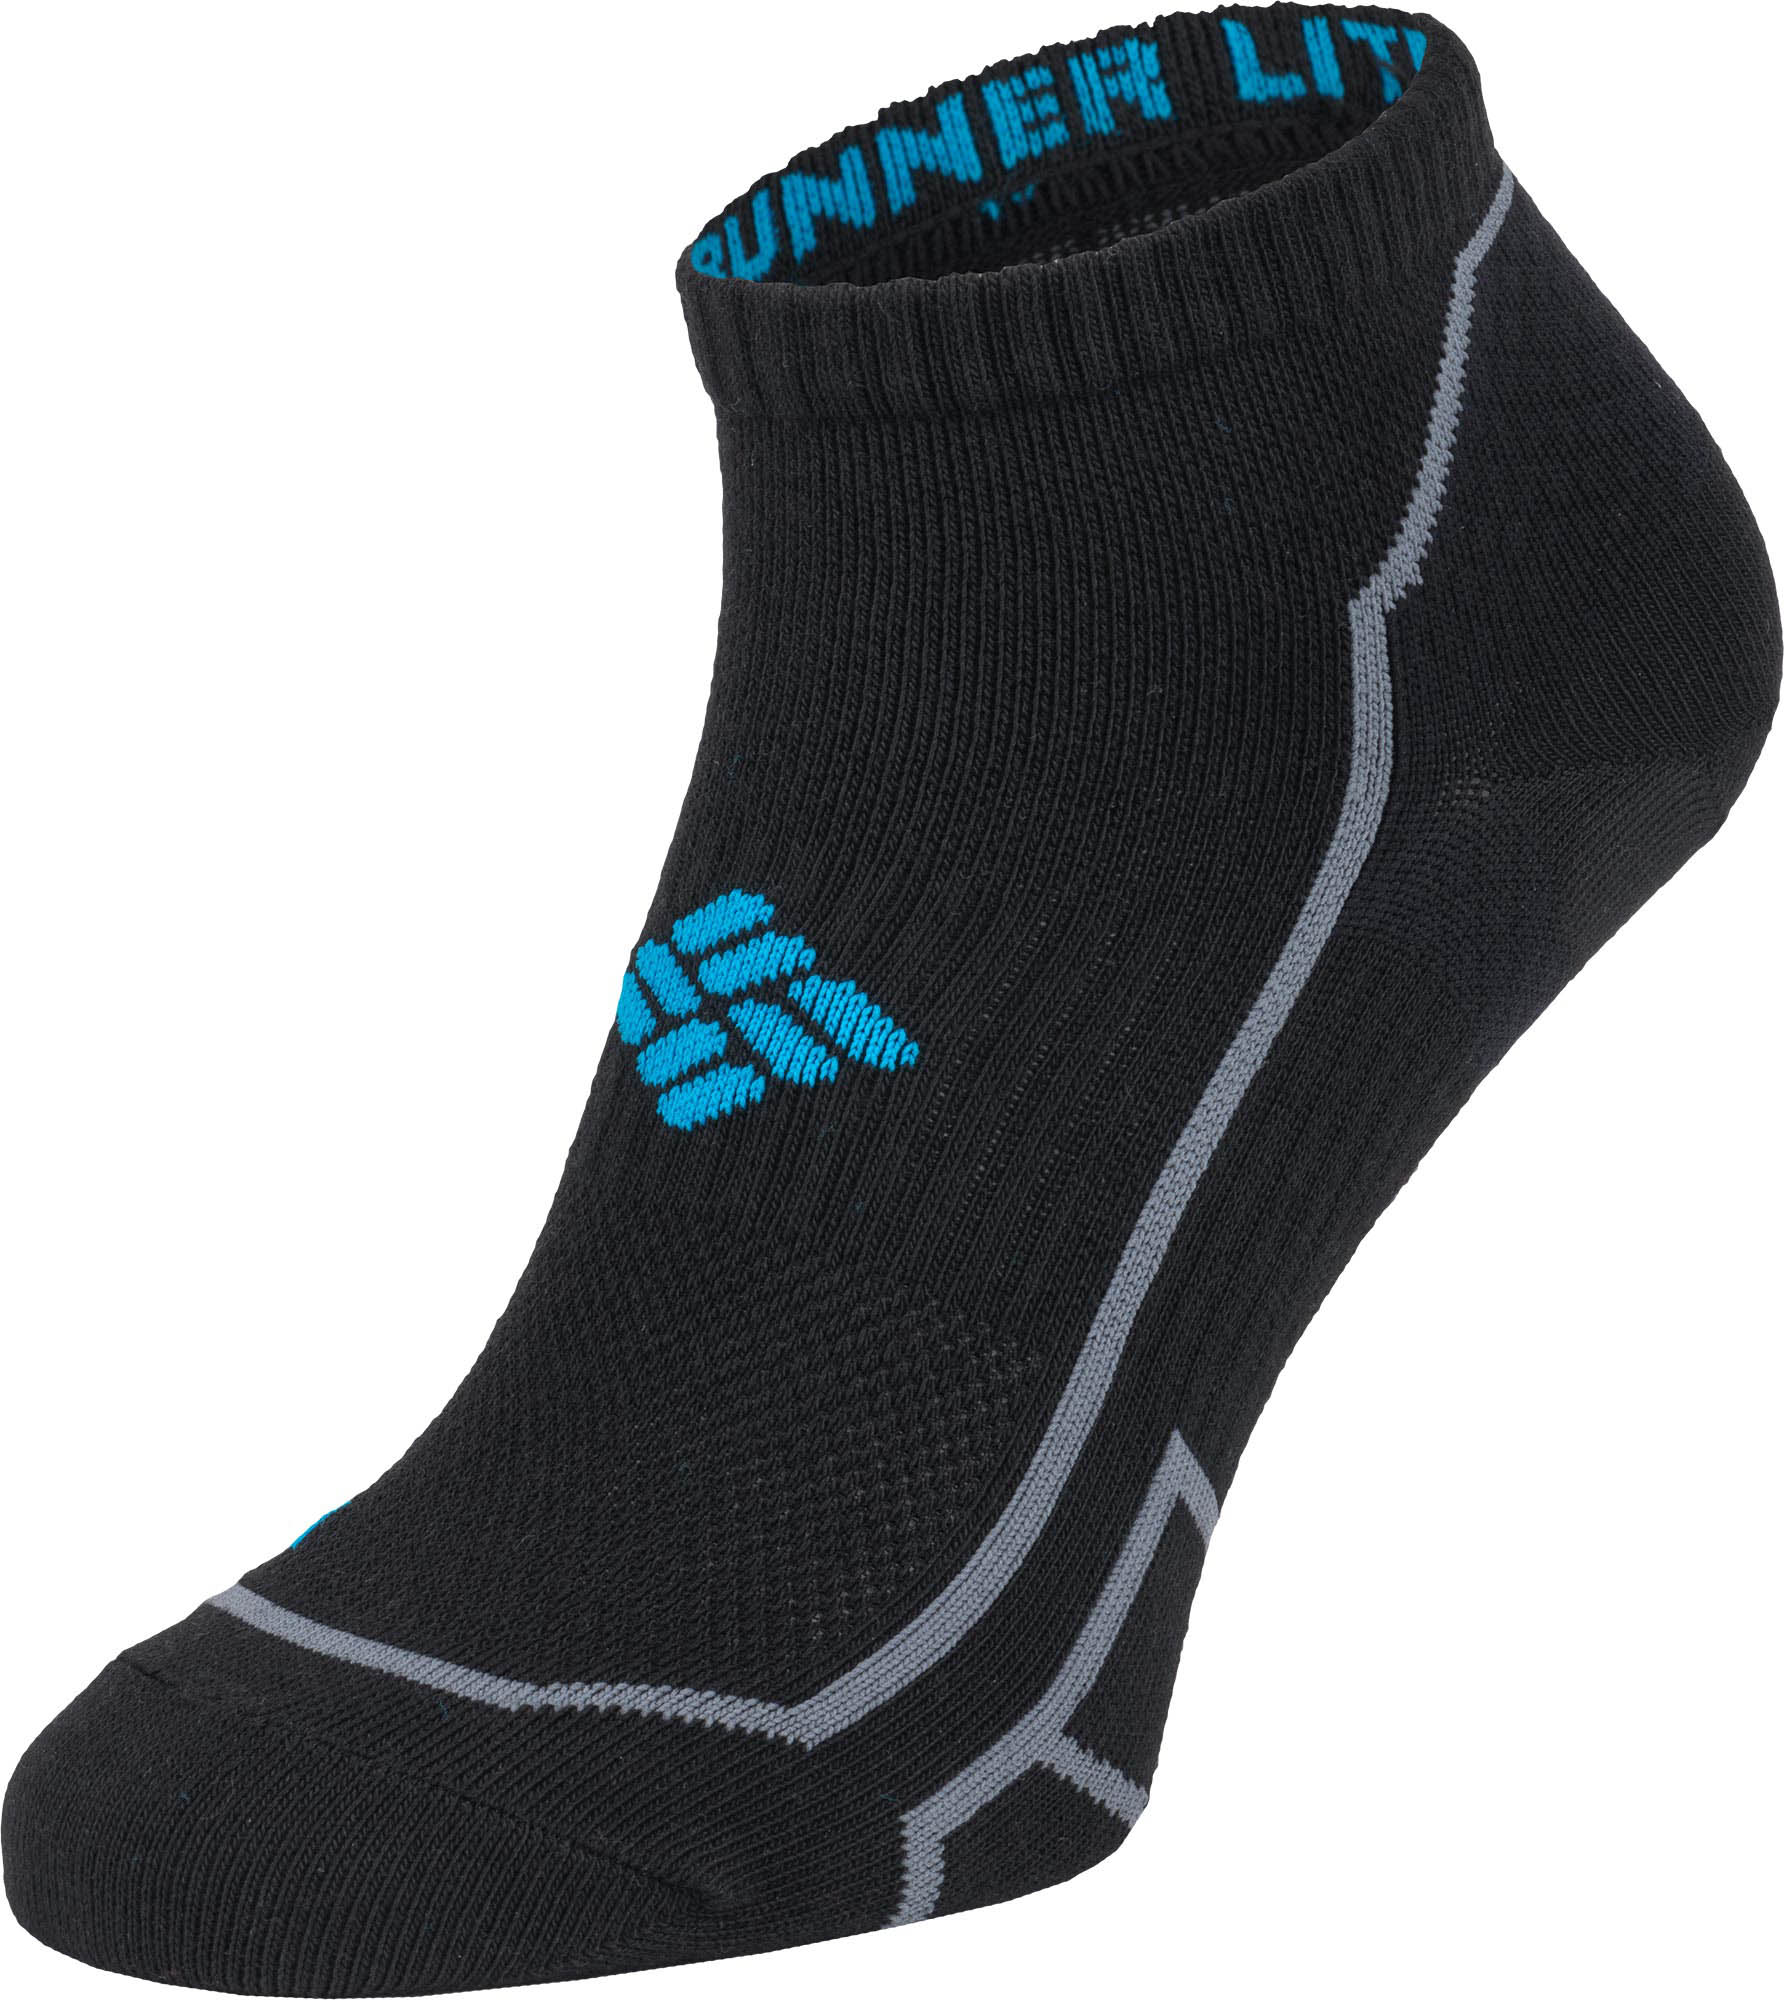 Sports socks